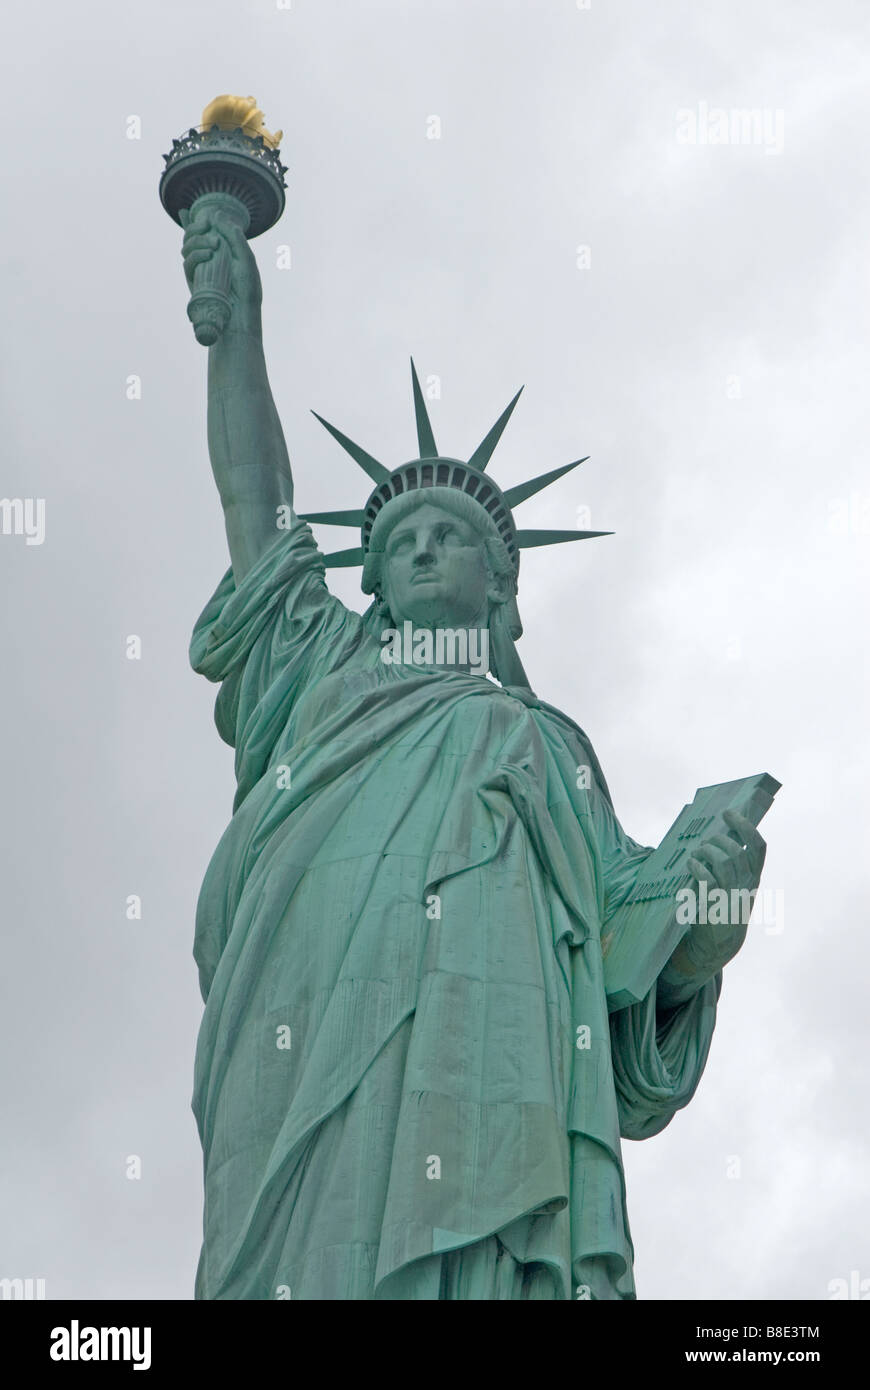 Close up of Statute of Liberty, New York, USA Stock Photo